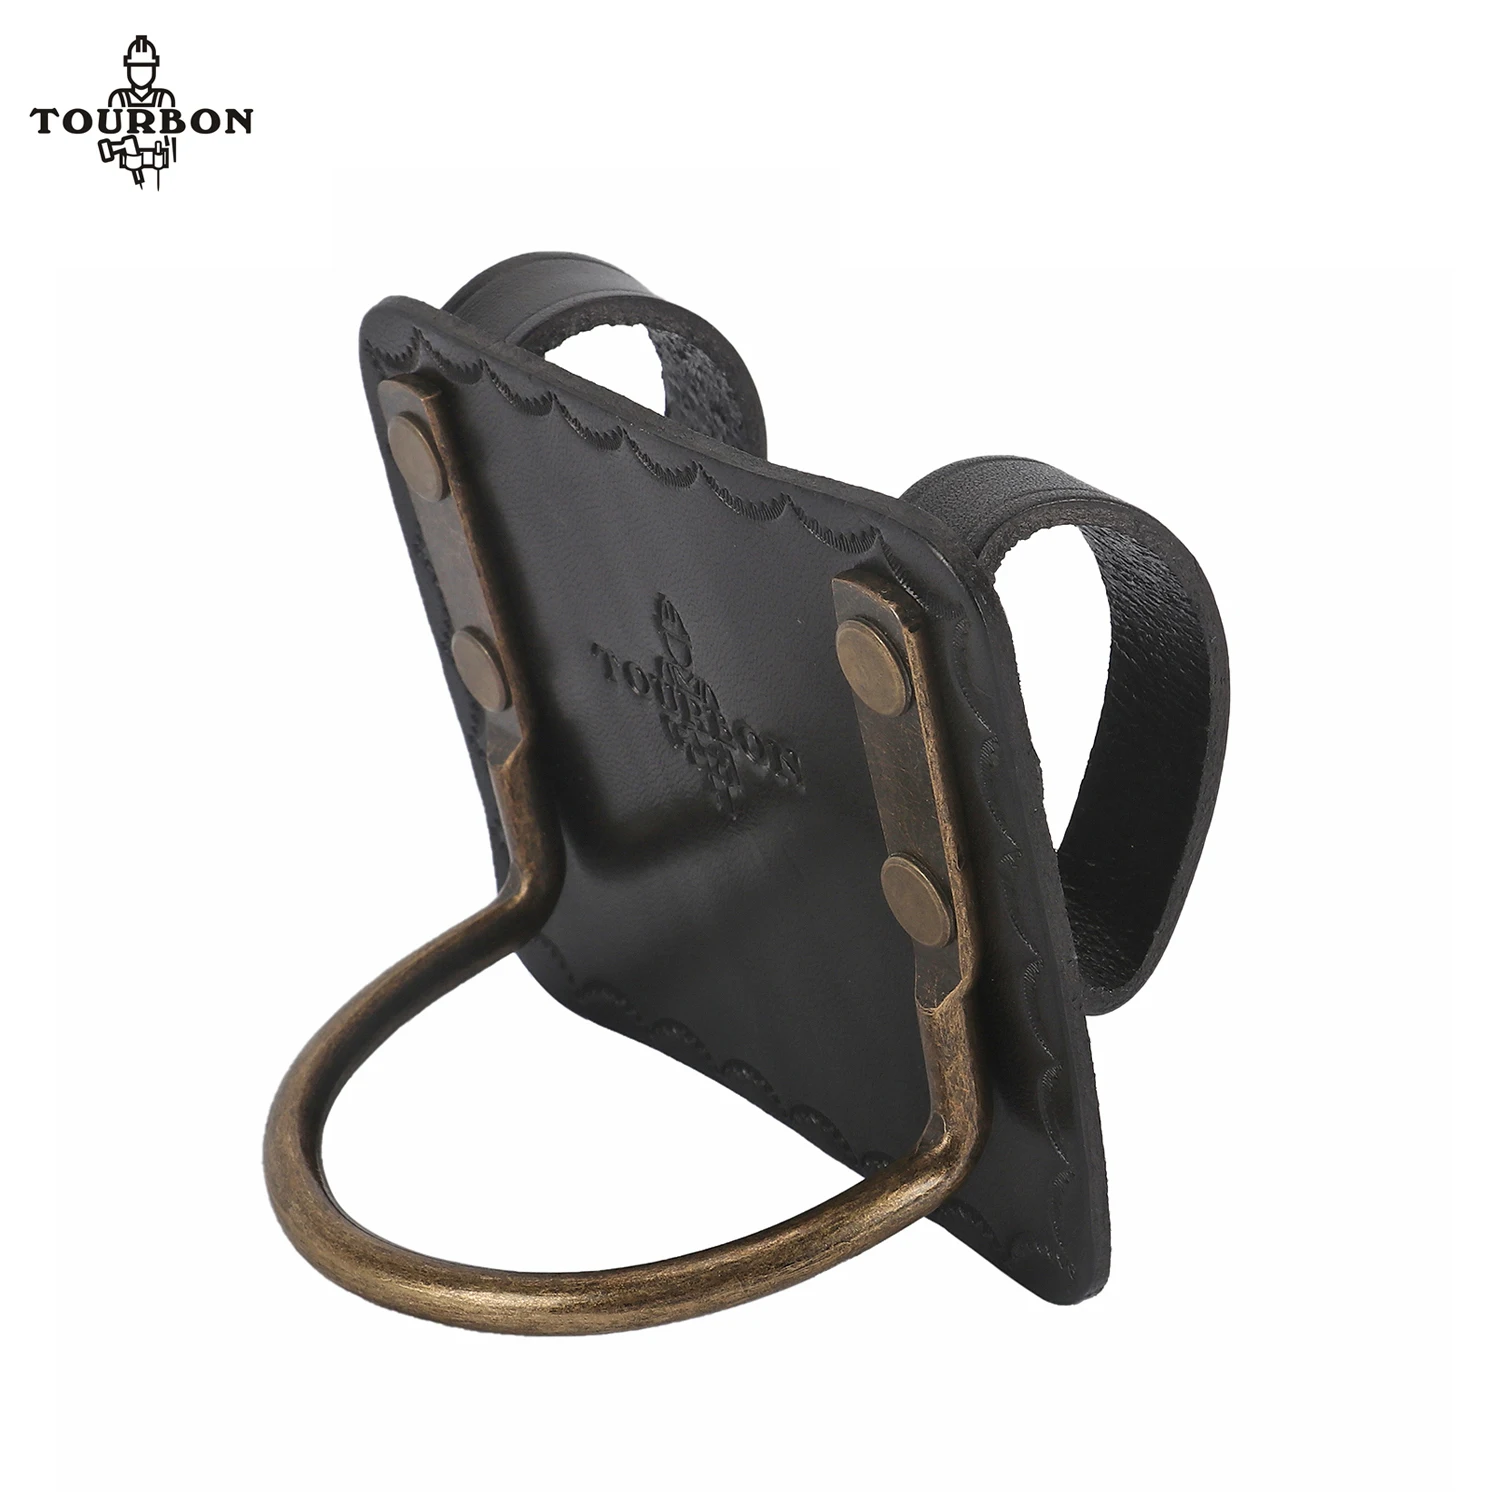 Tourbon-hacha de bucle de acero de alta resistencia, herramienta de ranura para soporte de martillo de montaje alto, funda de bucle para cinturón, cuero genuino negro